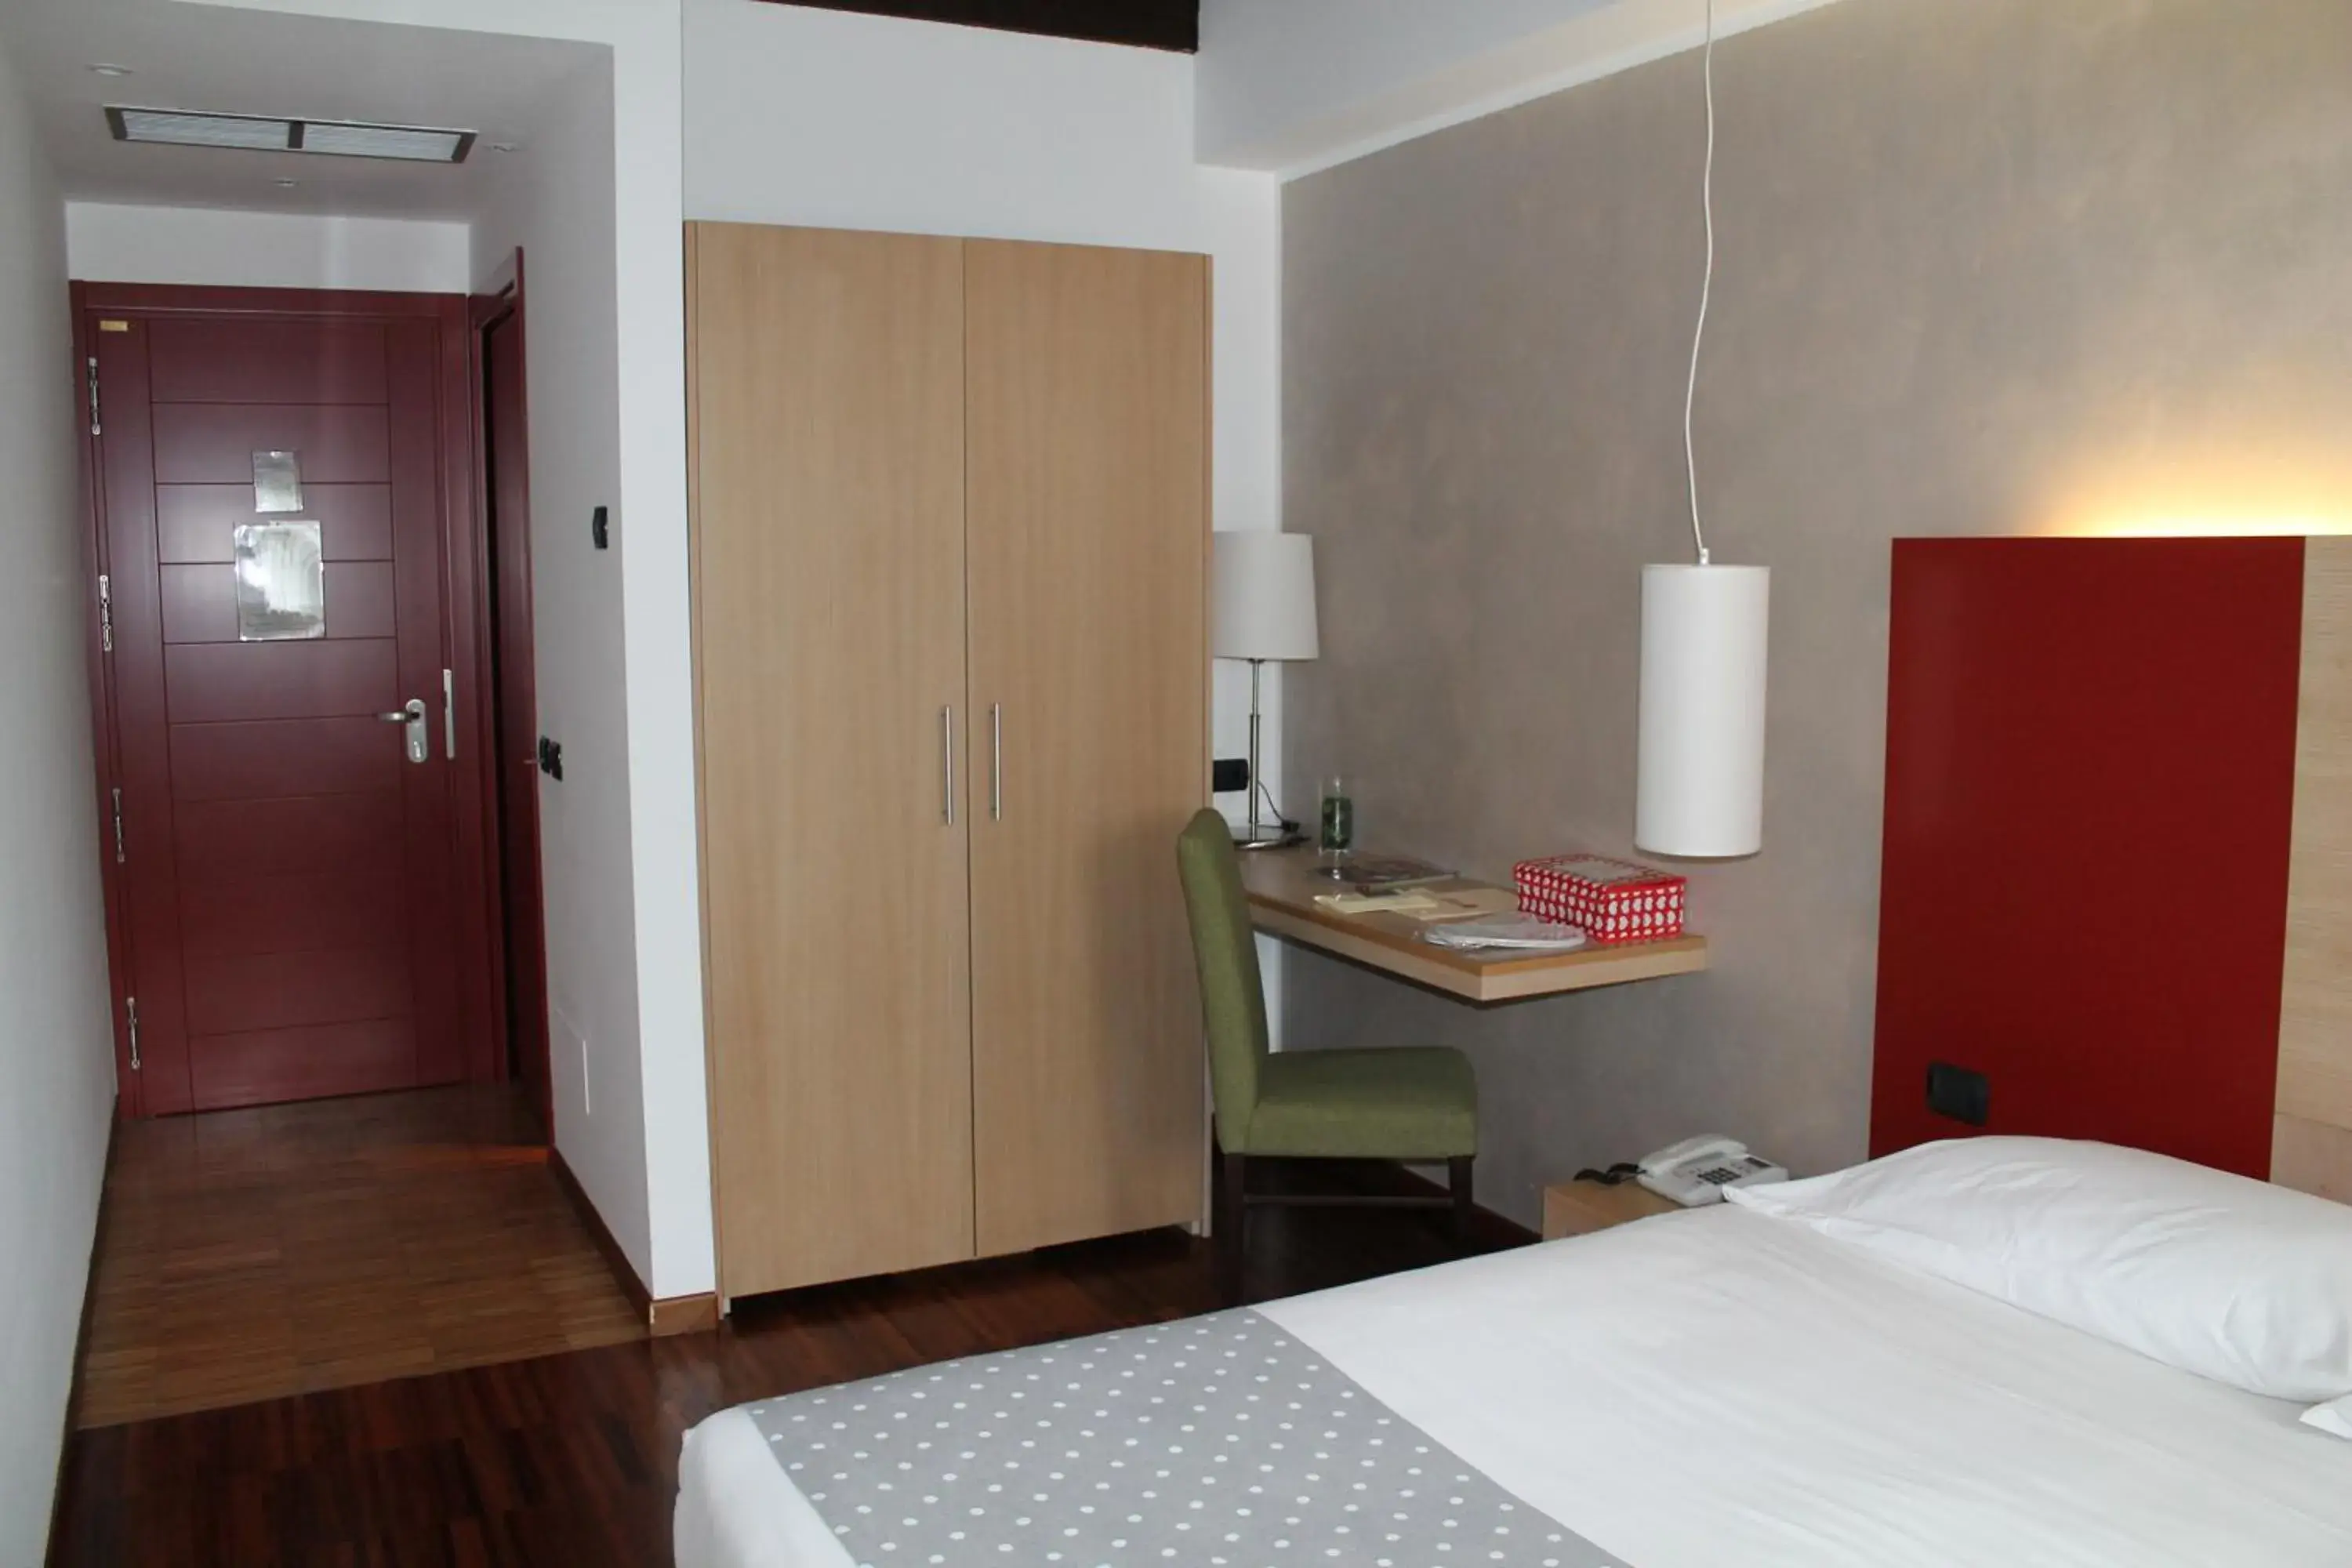 Bedroom, Room Photo in Cascina Scova Resort